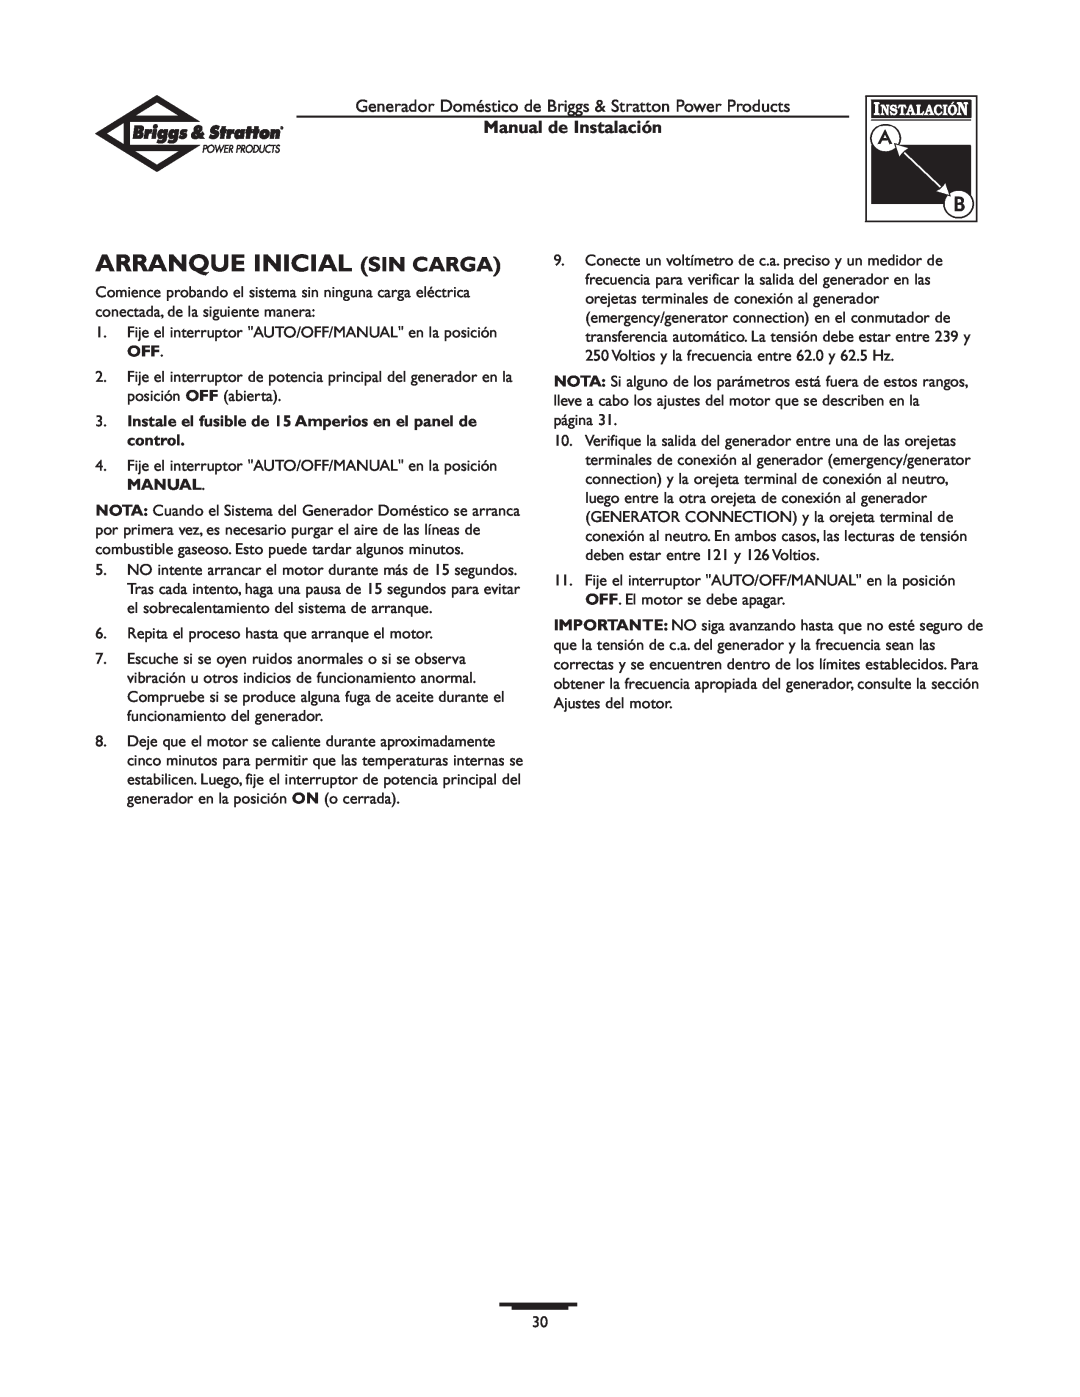 Briggs & Stratton 01938-0 manual Arranque Inicial Sin Carga, Manual de Instalación 